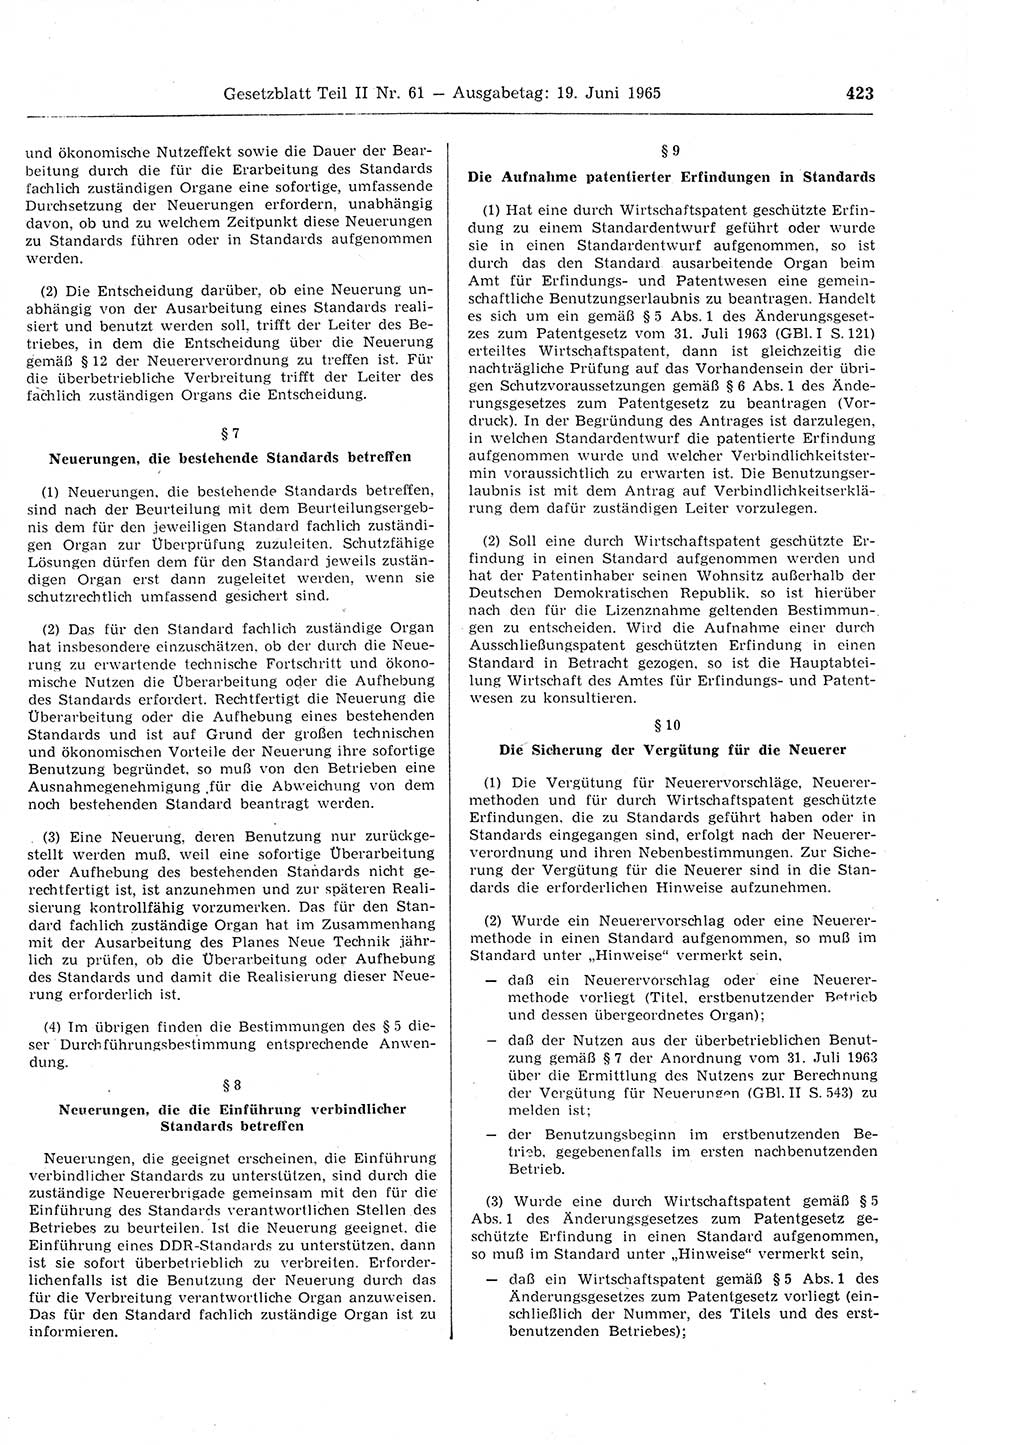 Gesetzblatt (GBl.) der Deutschen Demokratischen Republik (DDR) Teil ⅠⅠ 1965, Seite 423 (GBl. DDR ⅠⅠ 1965, S. 423)